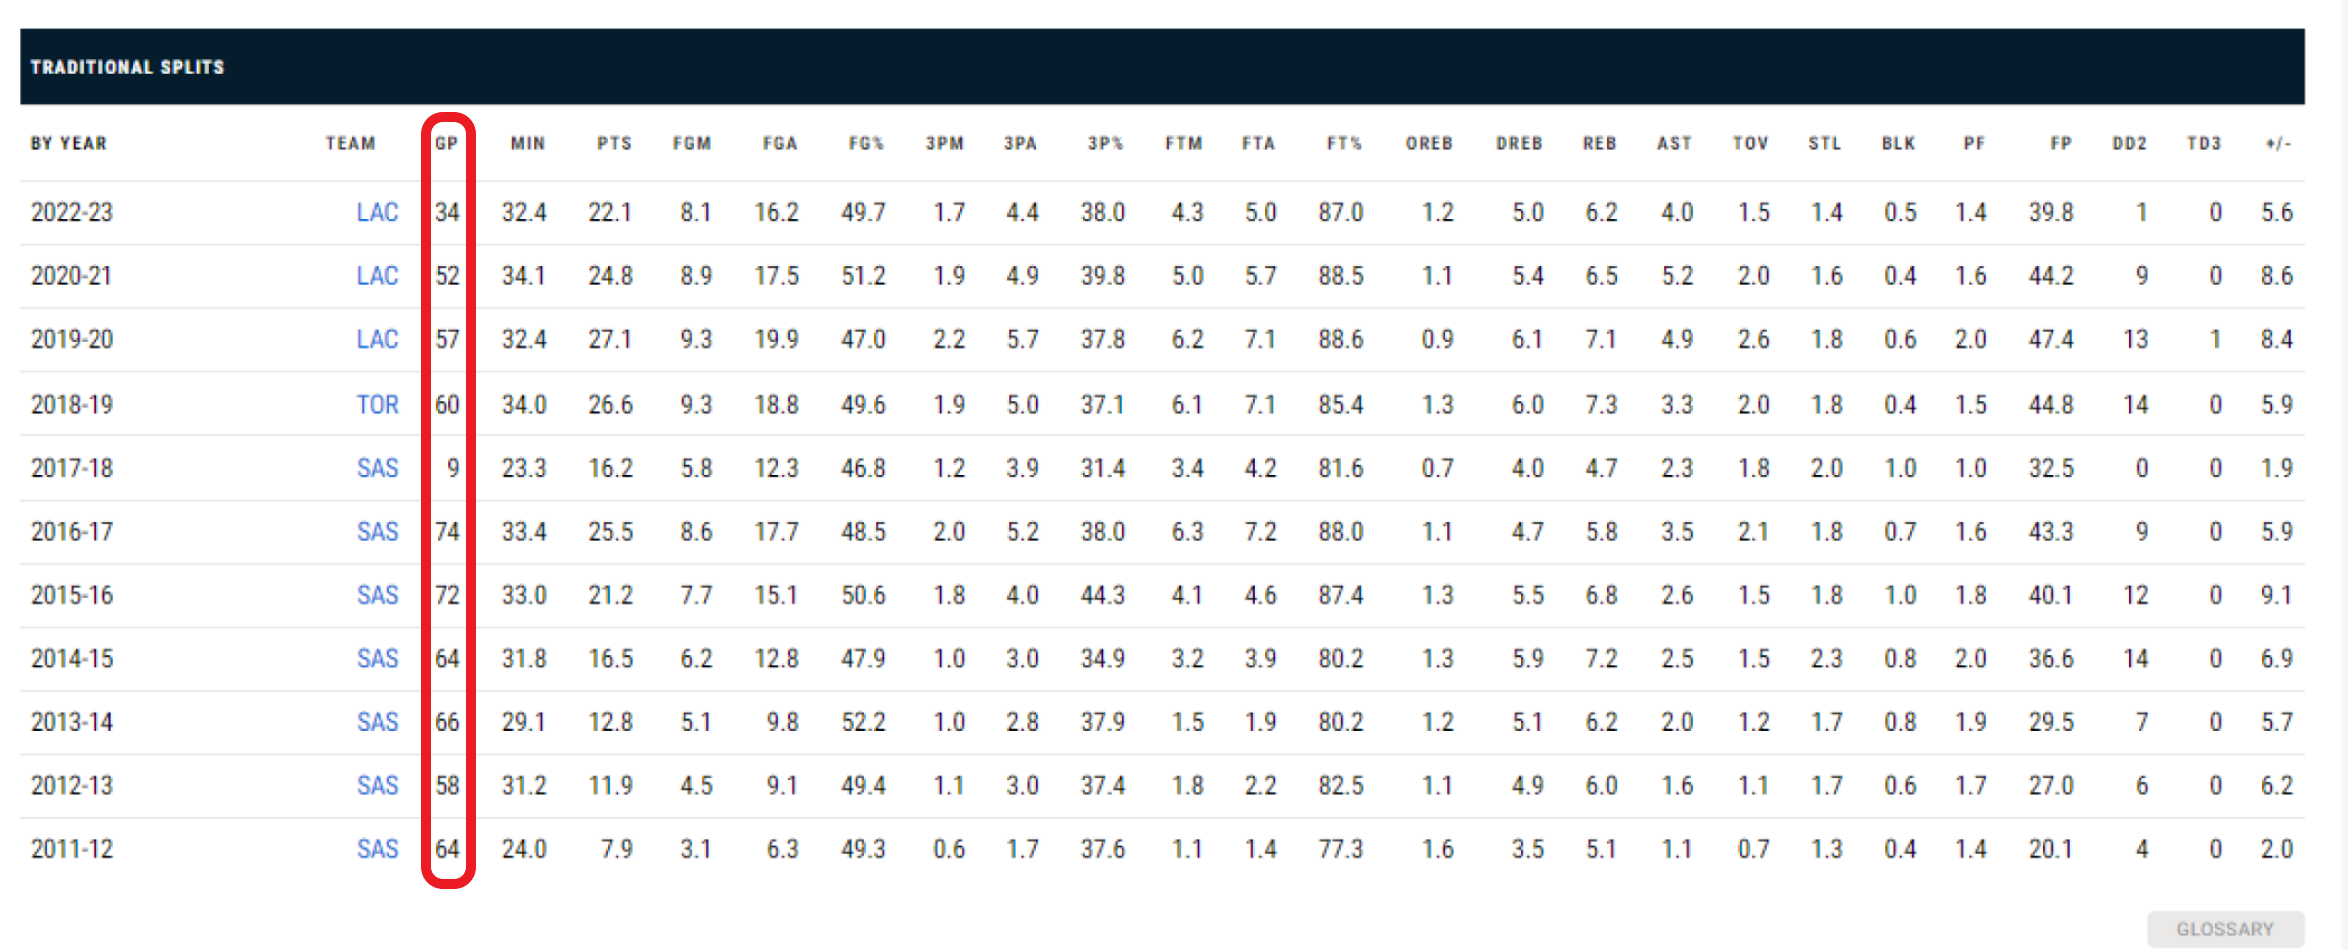 Kawhi Leonard siempre ha sufrido el mismo problema en su carrera: las lesiones. En ninguna temporada de su carrera ha jugado los 82 partidos. / Fuente: NBA.com